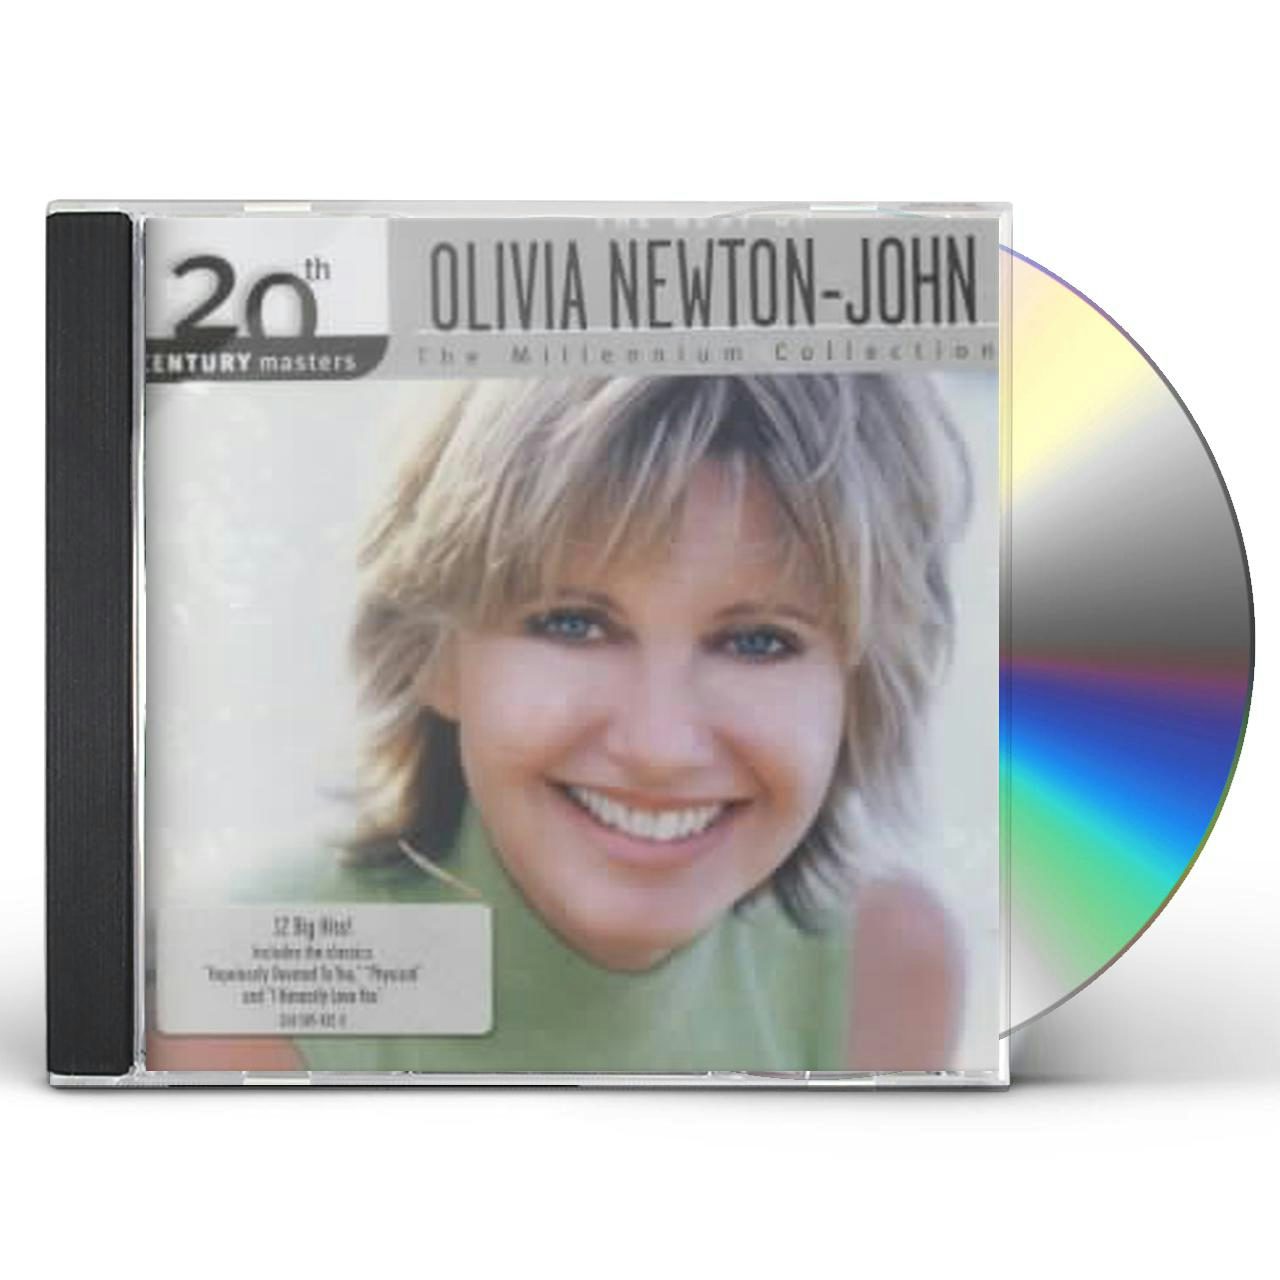 Olivia Newton-John MILLENNIUM COLLECTION: 20TH CENTURY MASTERS CD